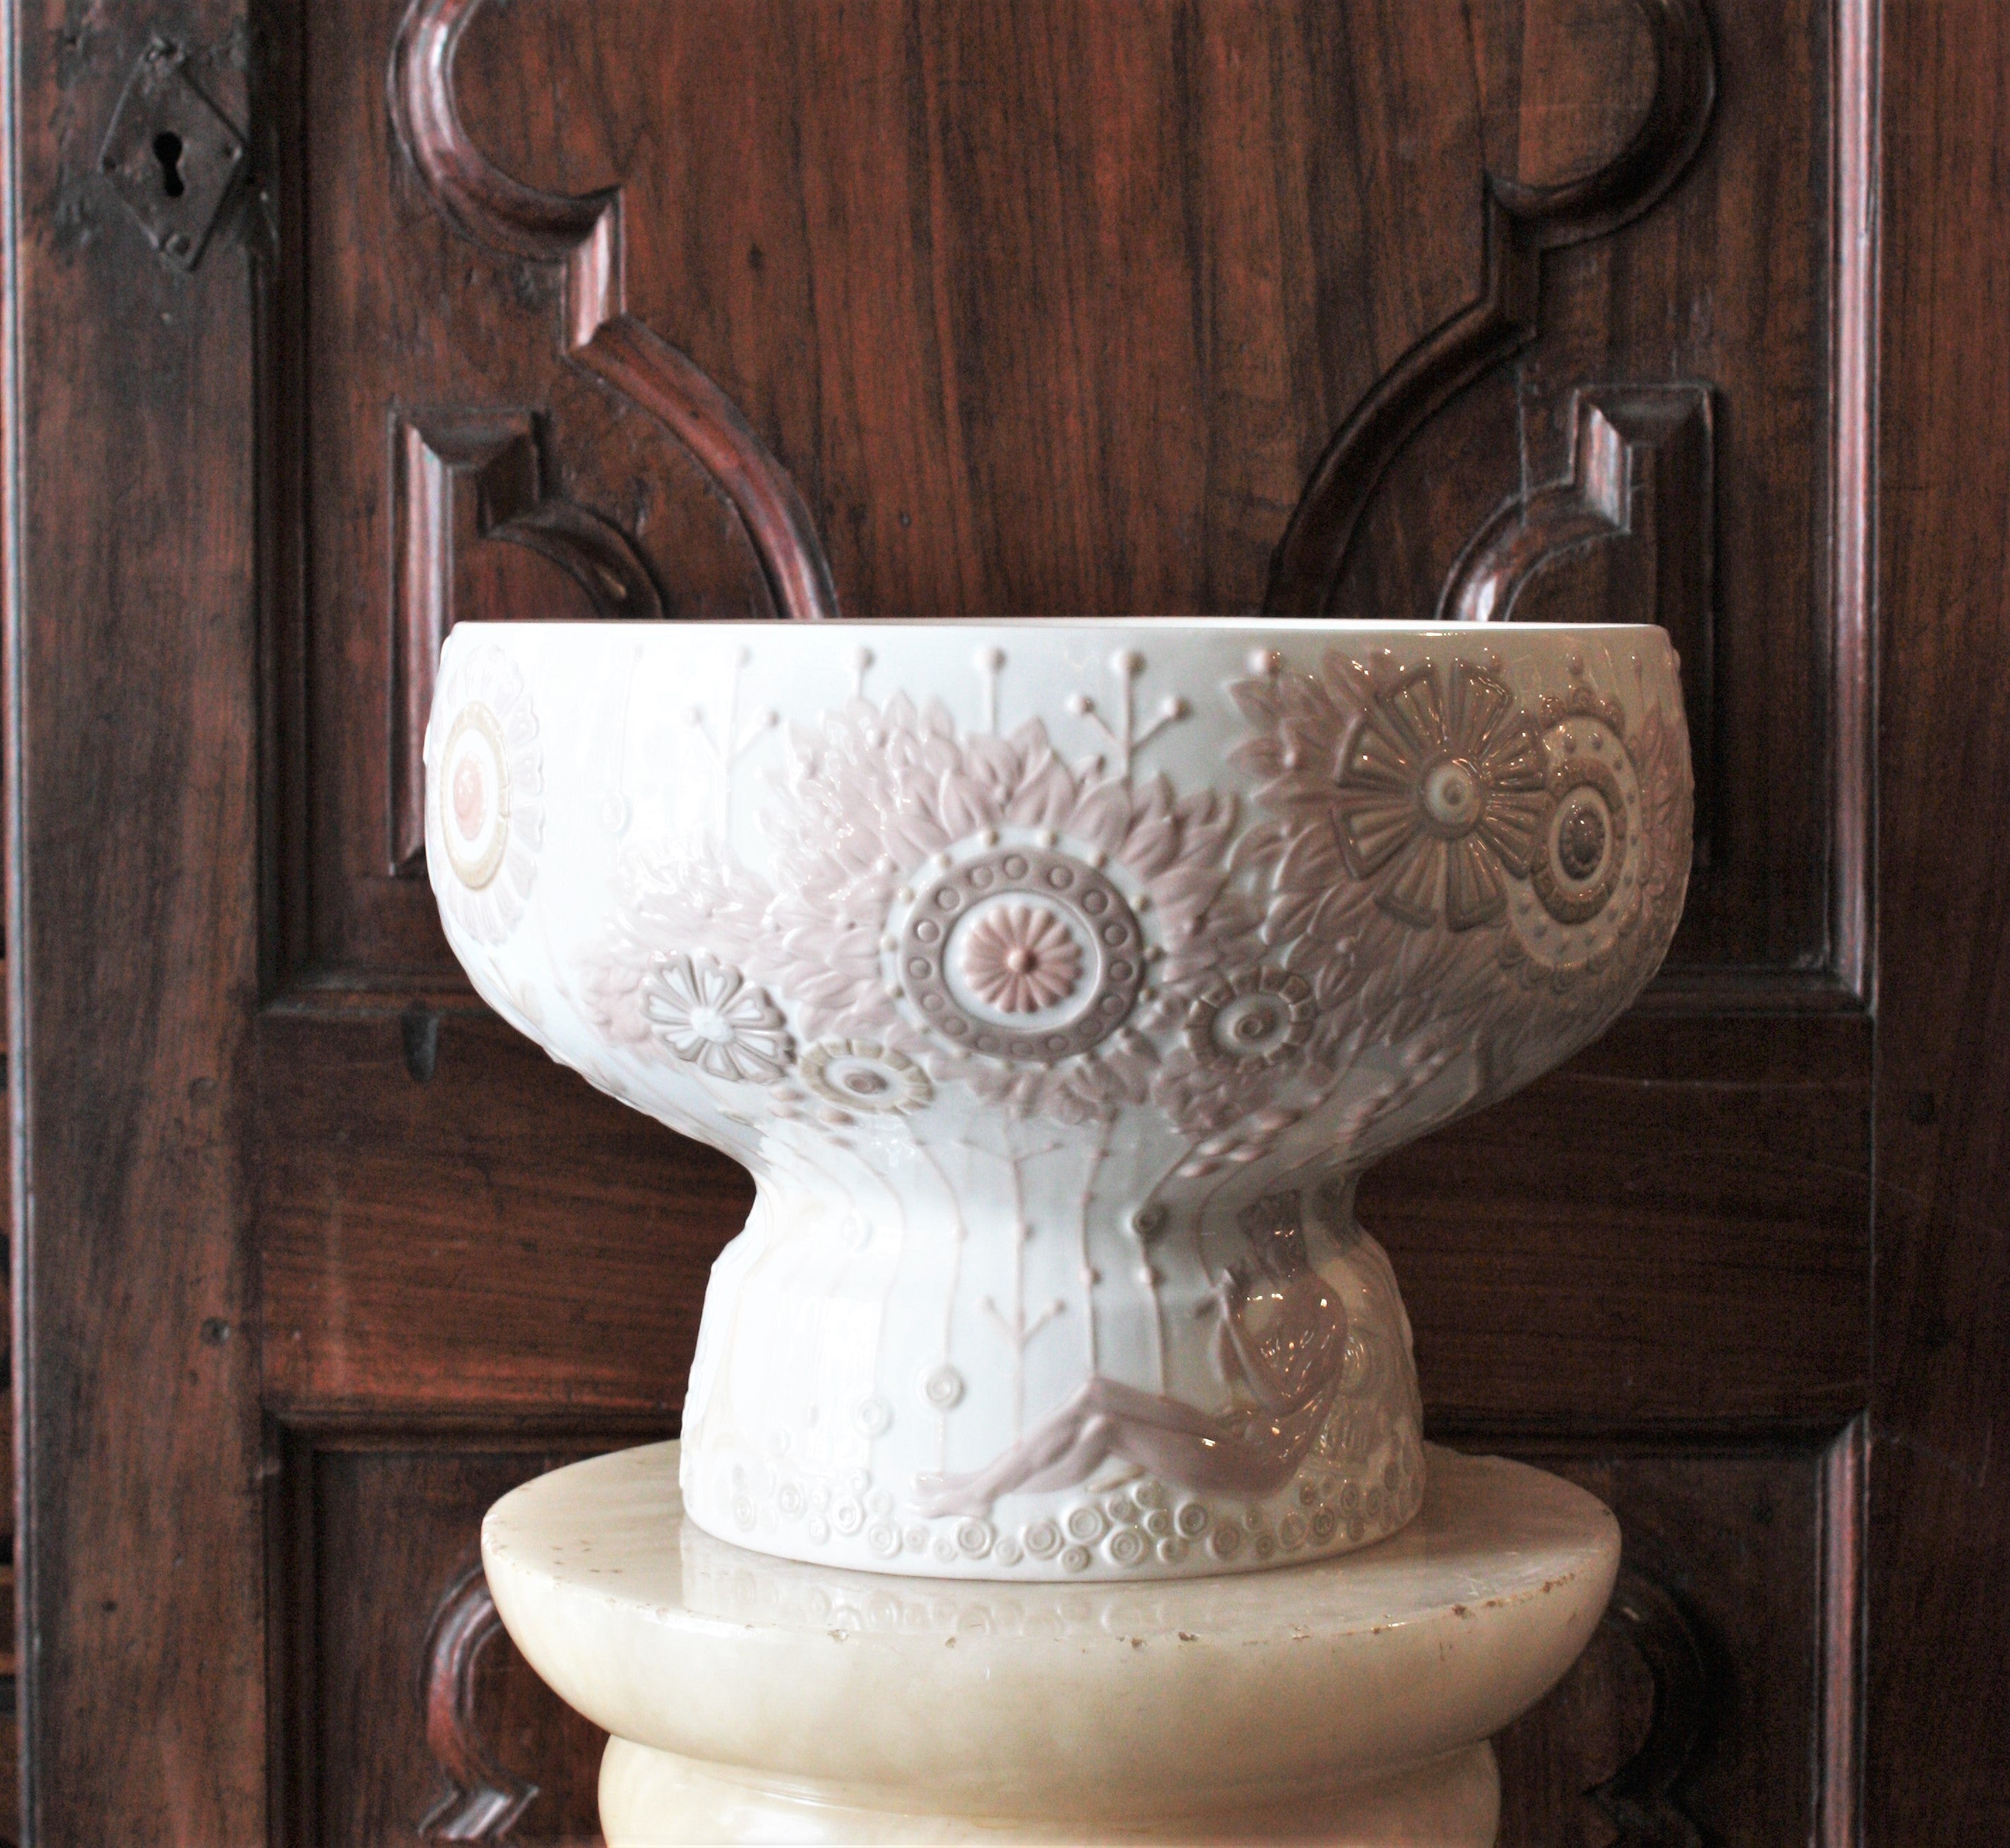 Große Lladró Porzellan Blumen Centerpiece Vase
Ein wunderschöner floraler Tafelaufsatz aus Porzellan, entworfen von Julio Fernández und hergestellt von Lladró. Spanien, 1970er Jahre.
Diese elegante glasierte Porzellanvase hat ein klares Design mit